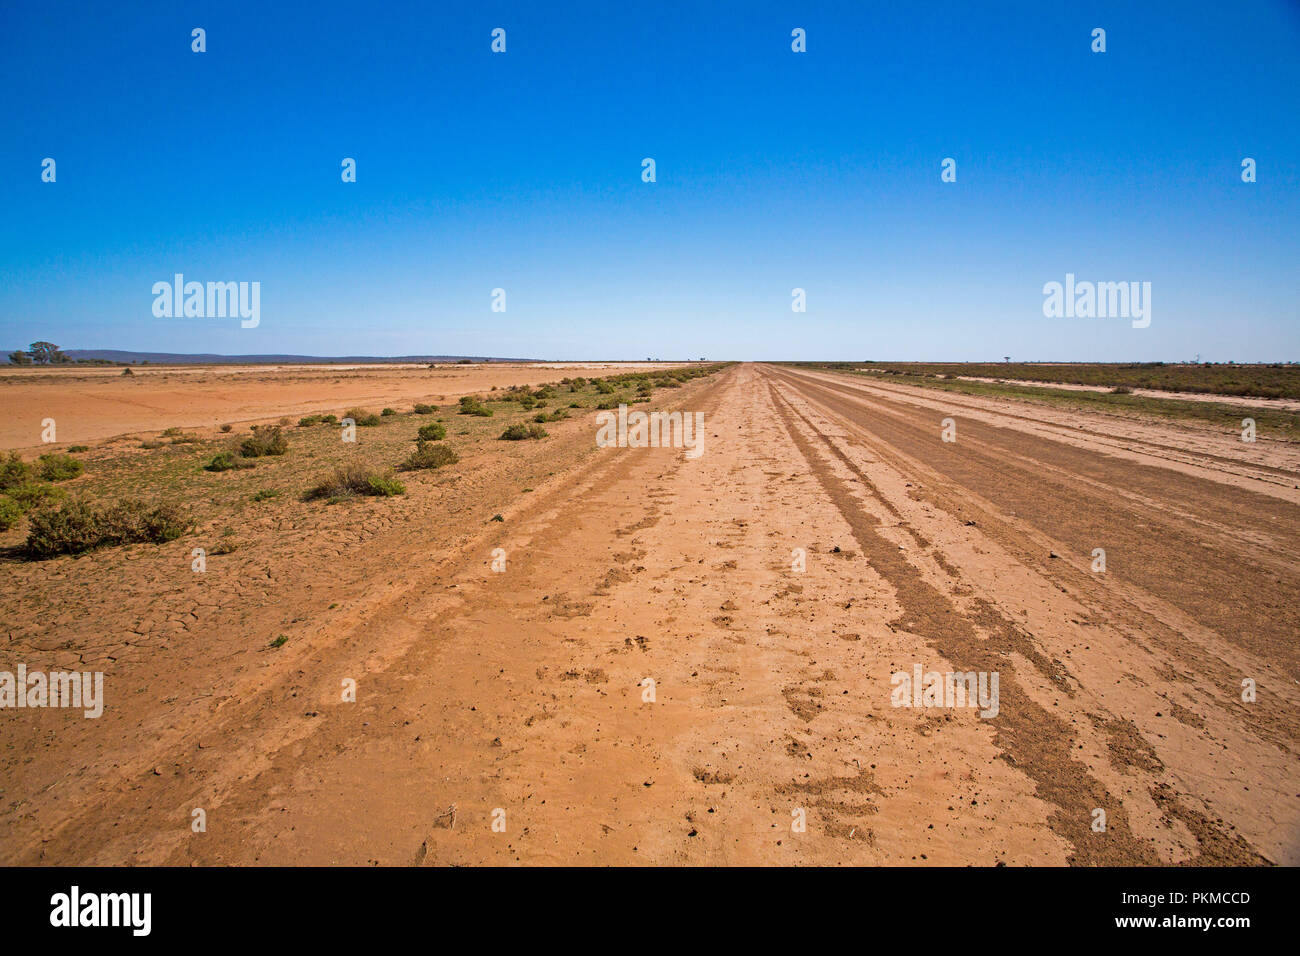 Largo camino del desierto australiano cortar a través de árido paisaje desprovisto de vegetación durante la sequía y estiramiento para lejano horizonte bajo un cielo azul Foto de stock